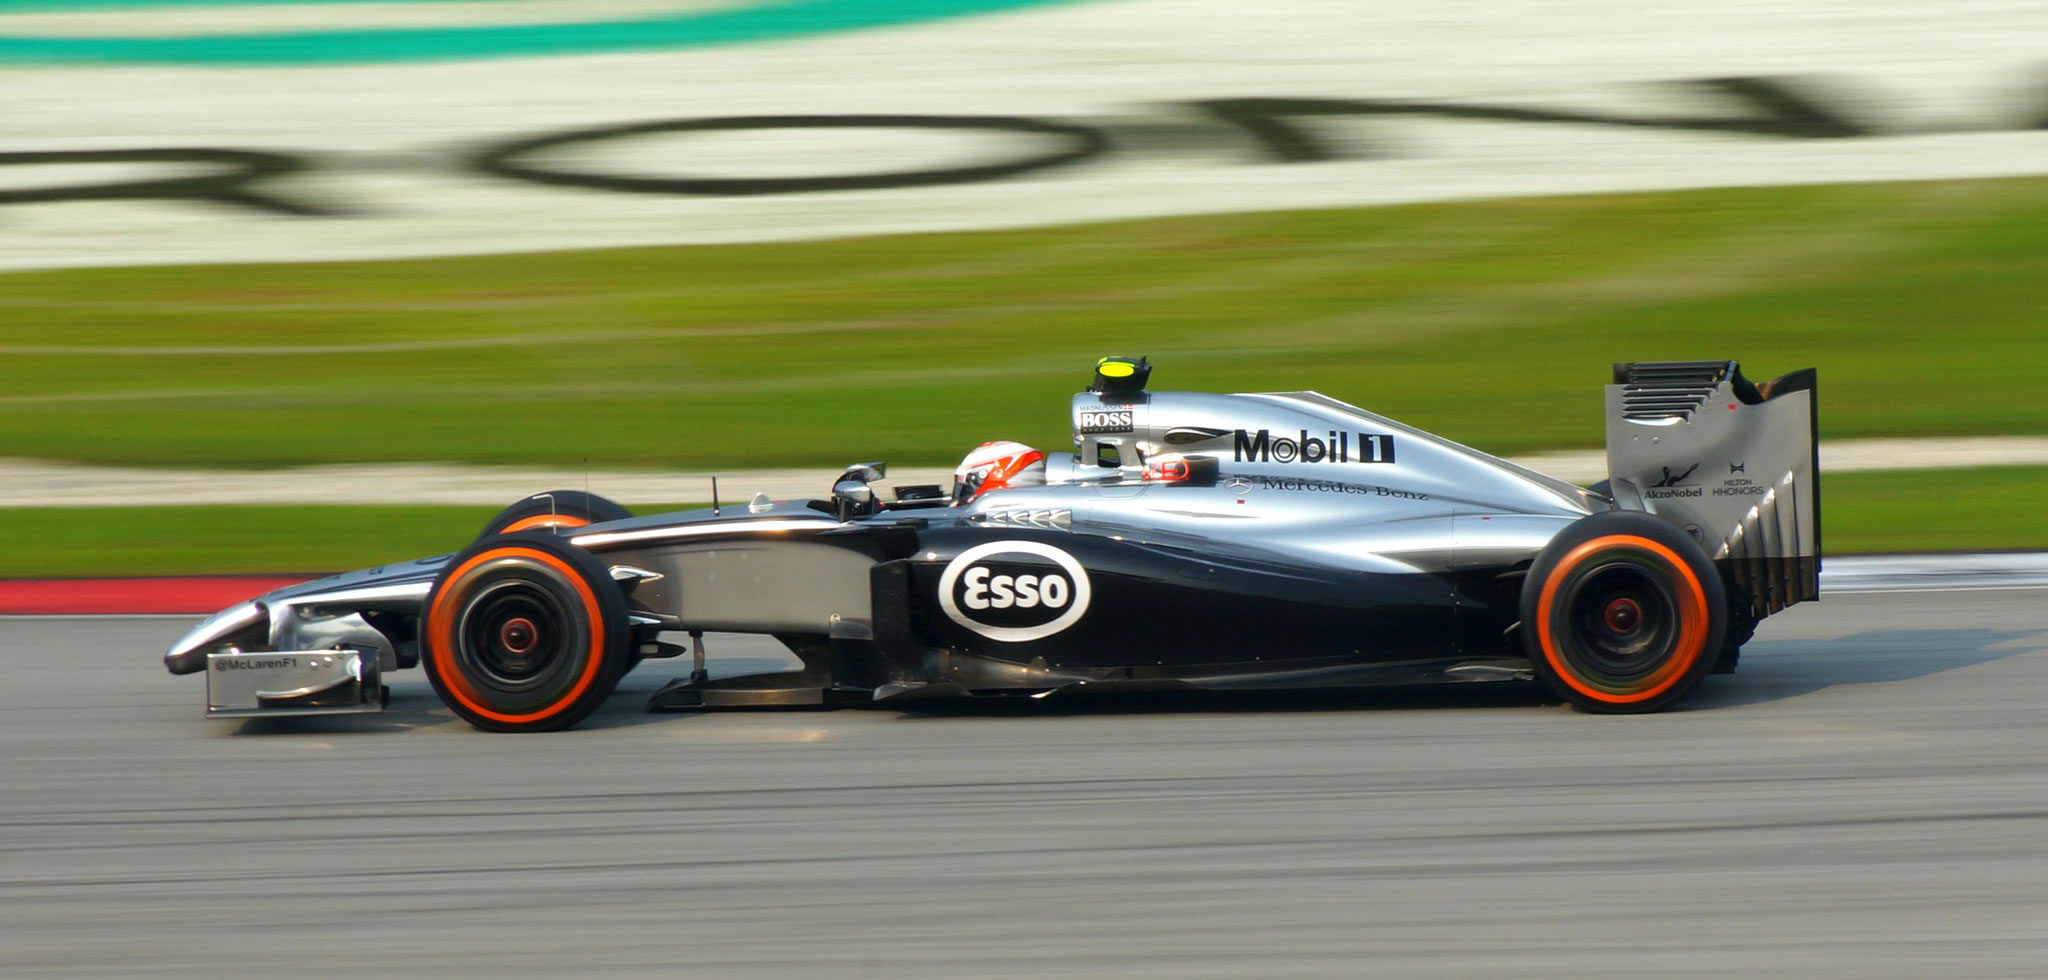 McLaren Mercedes F1 car